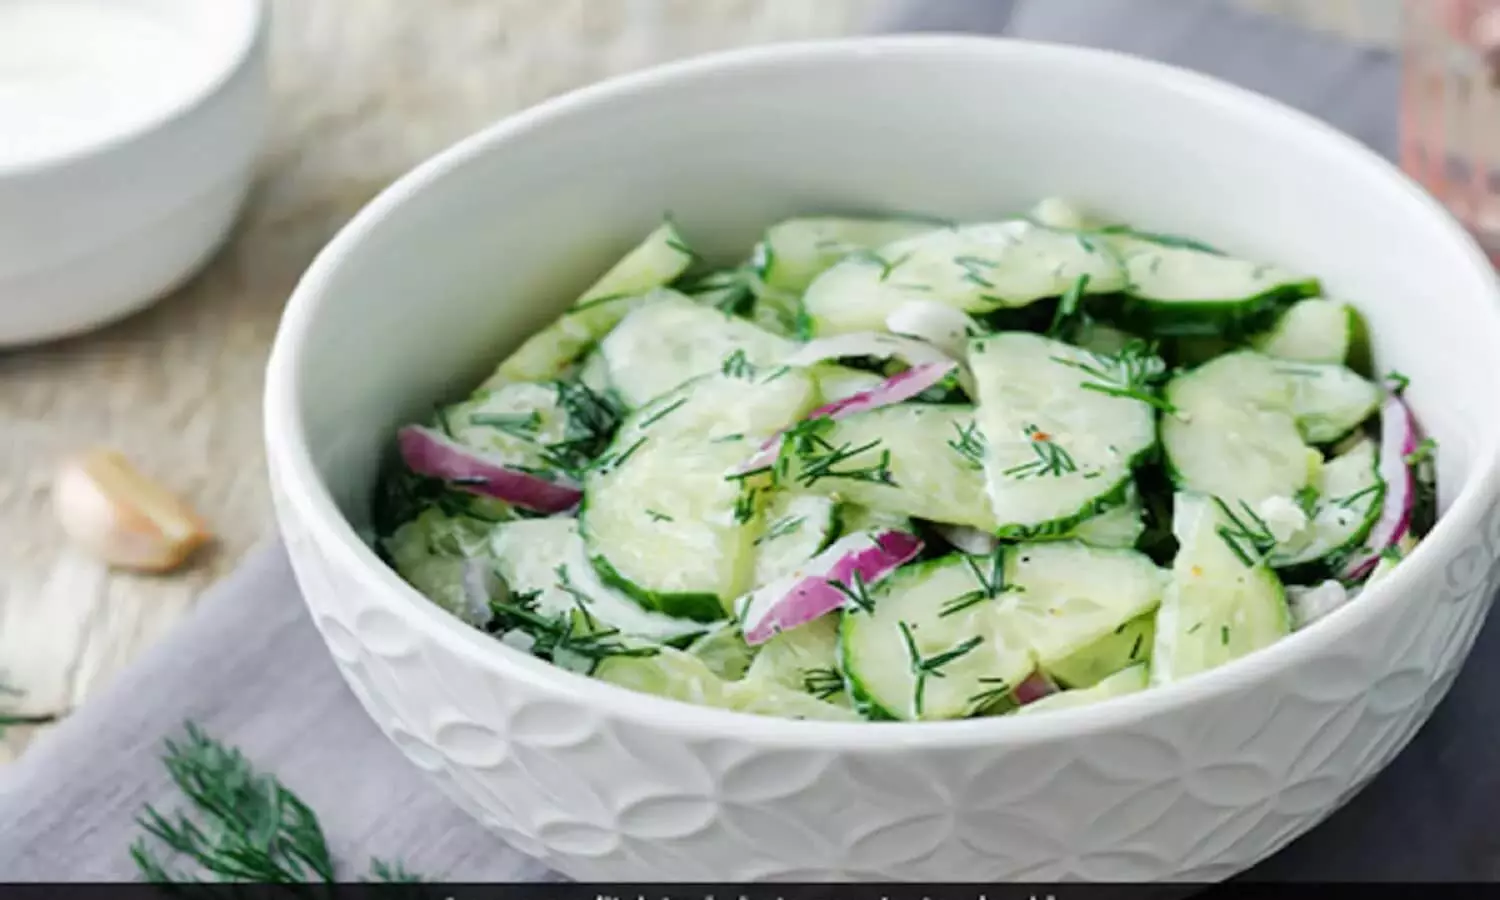 Salad Recipe: खीरे और दही से बनाएं गर्मियों में फायदेमंद ठंडा सलाद